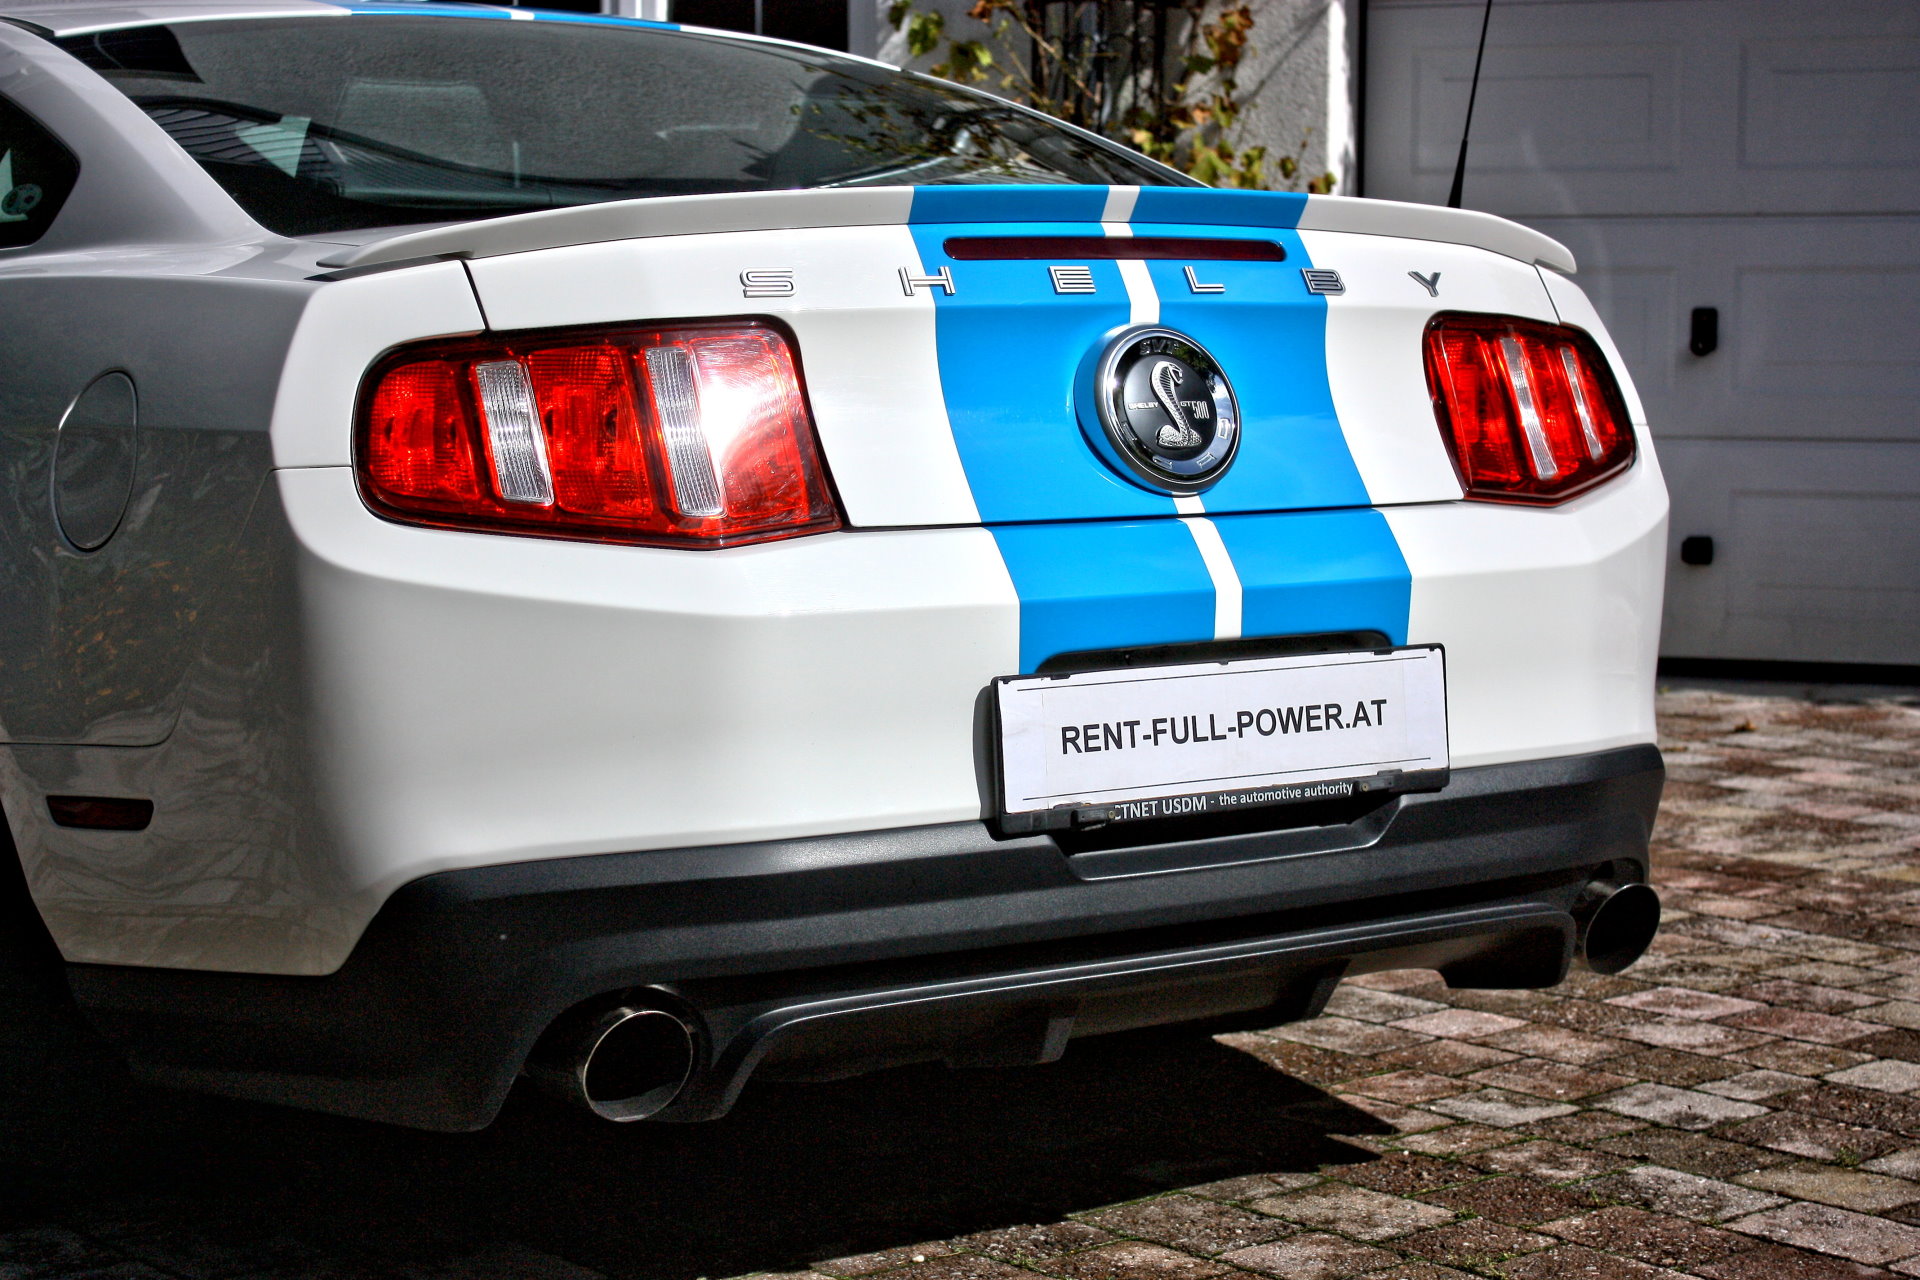 Ford Mustang GT fahren: Das ideale Geschenk zum Geburtstag